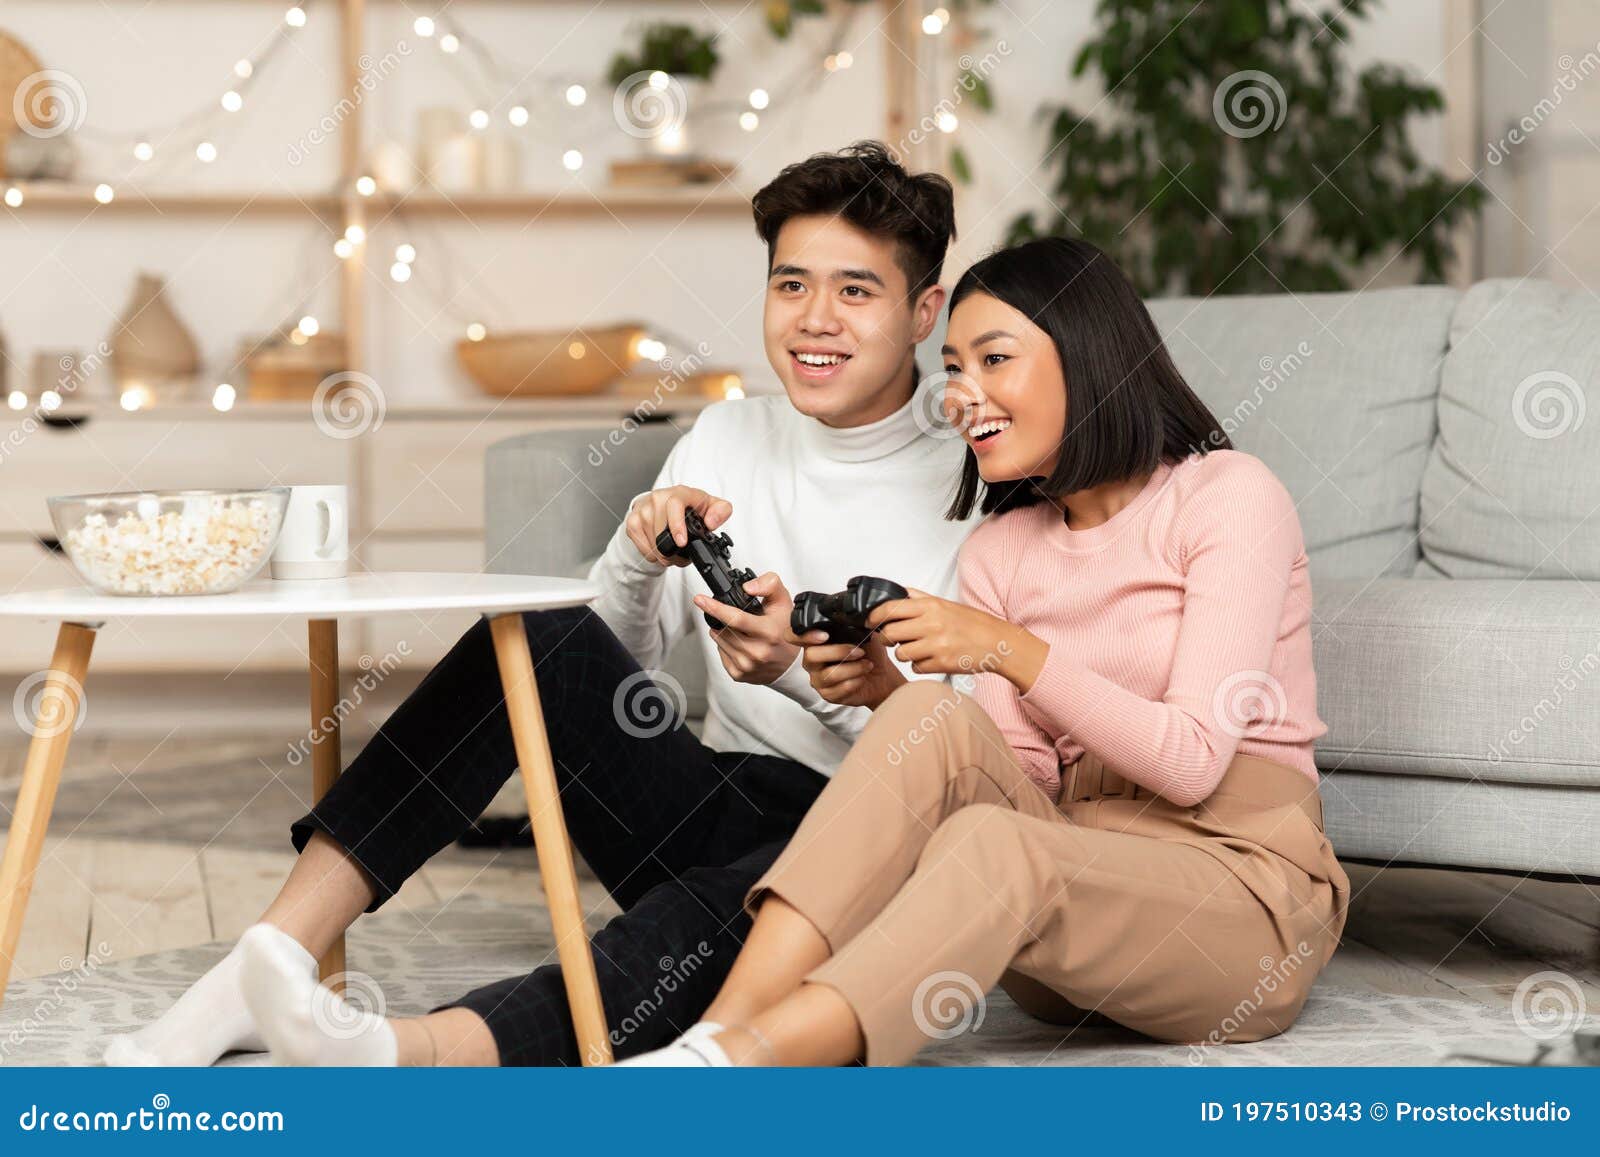 Casal Asiático Jogando Videogames Juntos Namorada Ganhando Jogo Em Casa  Imagem de Stock - Imagem de jogar, assoalho: 197507369